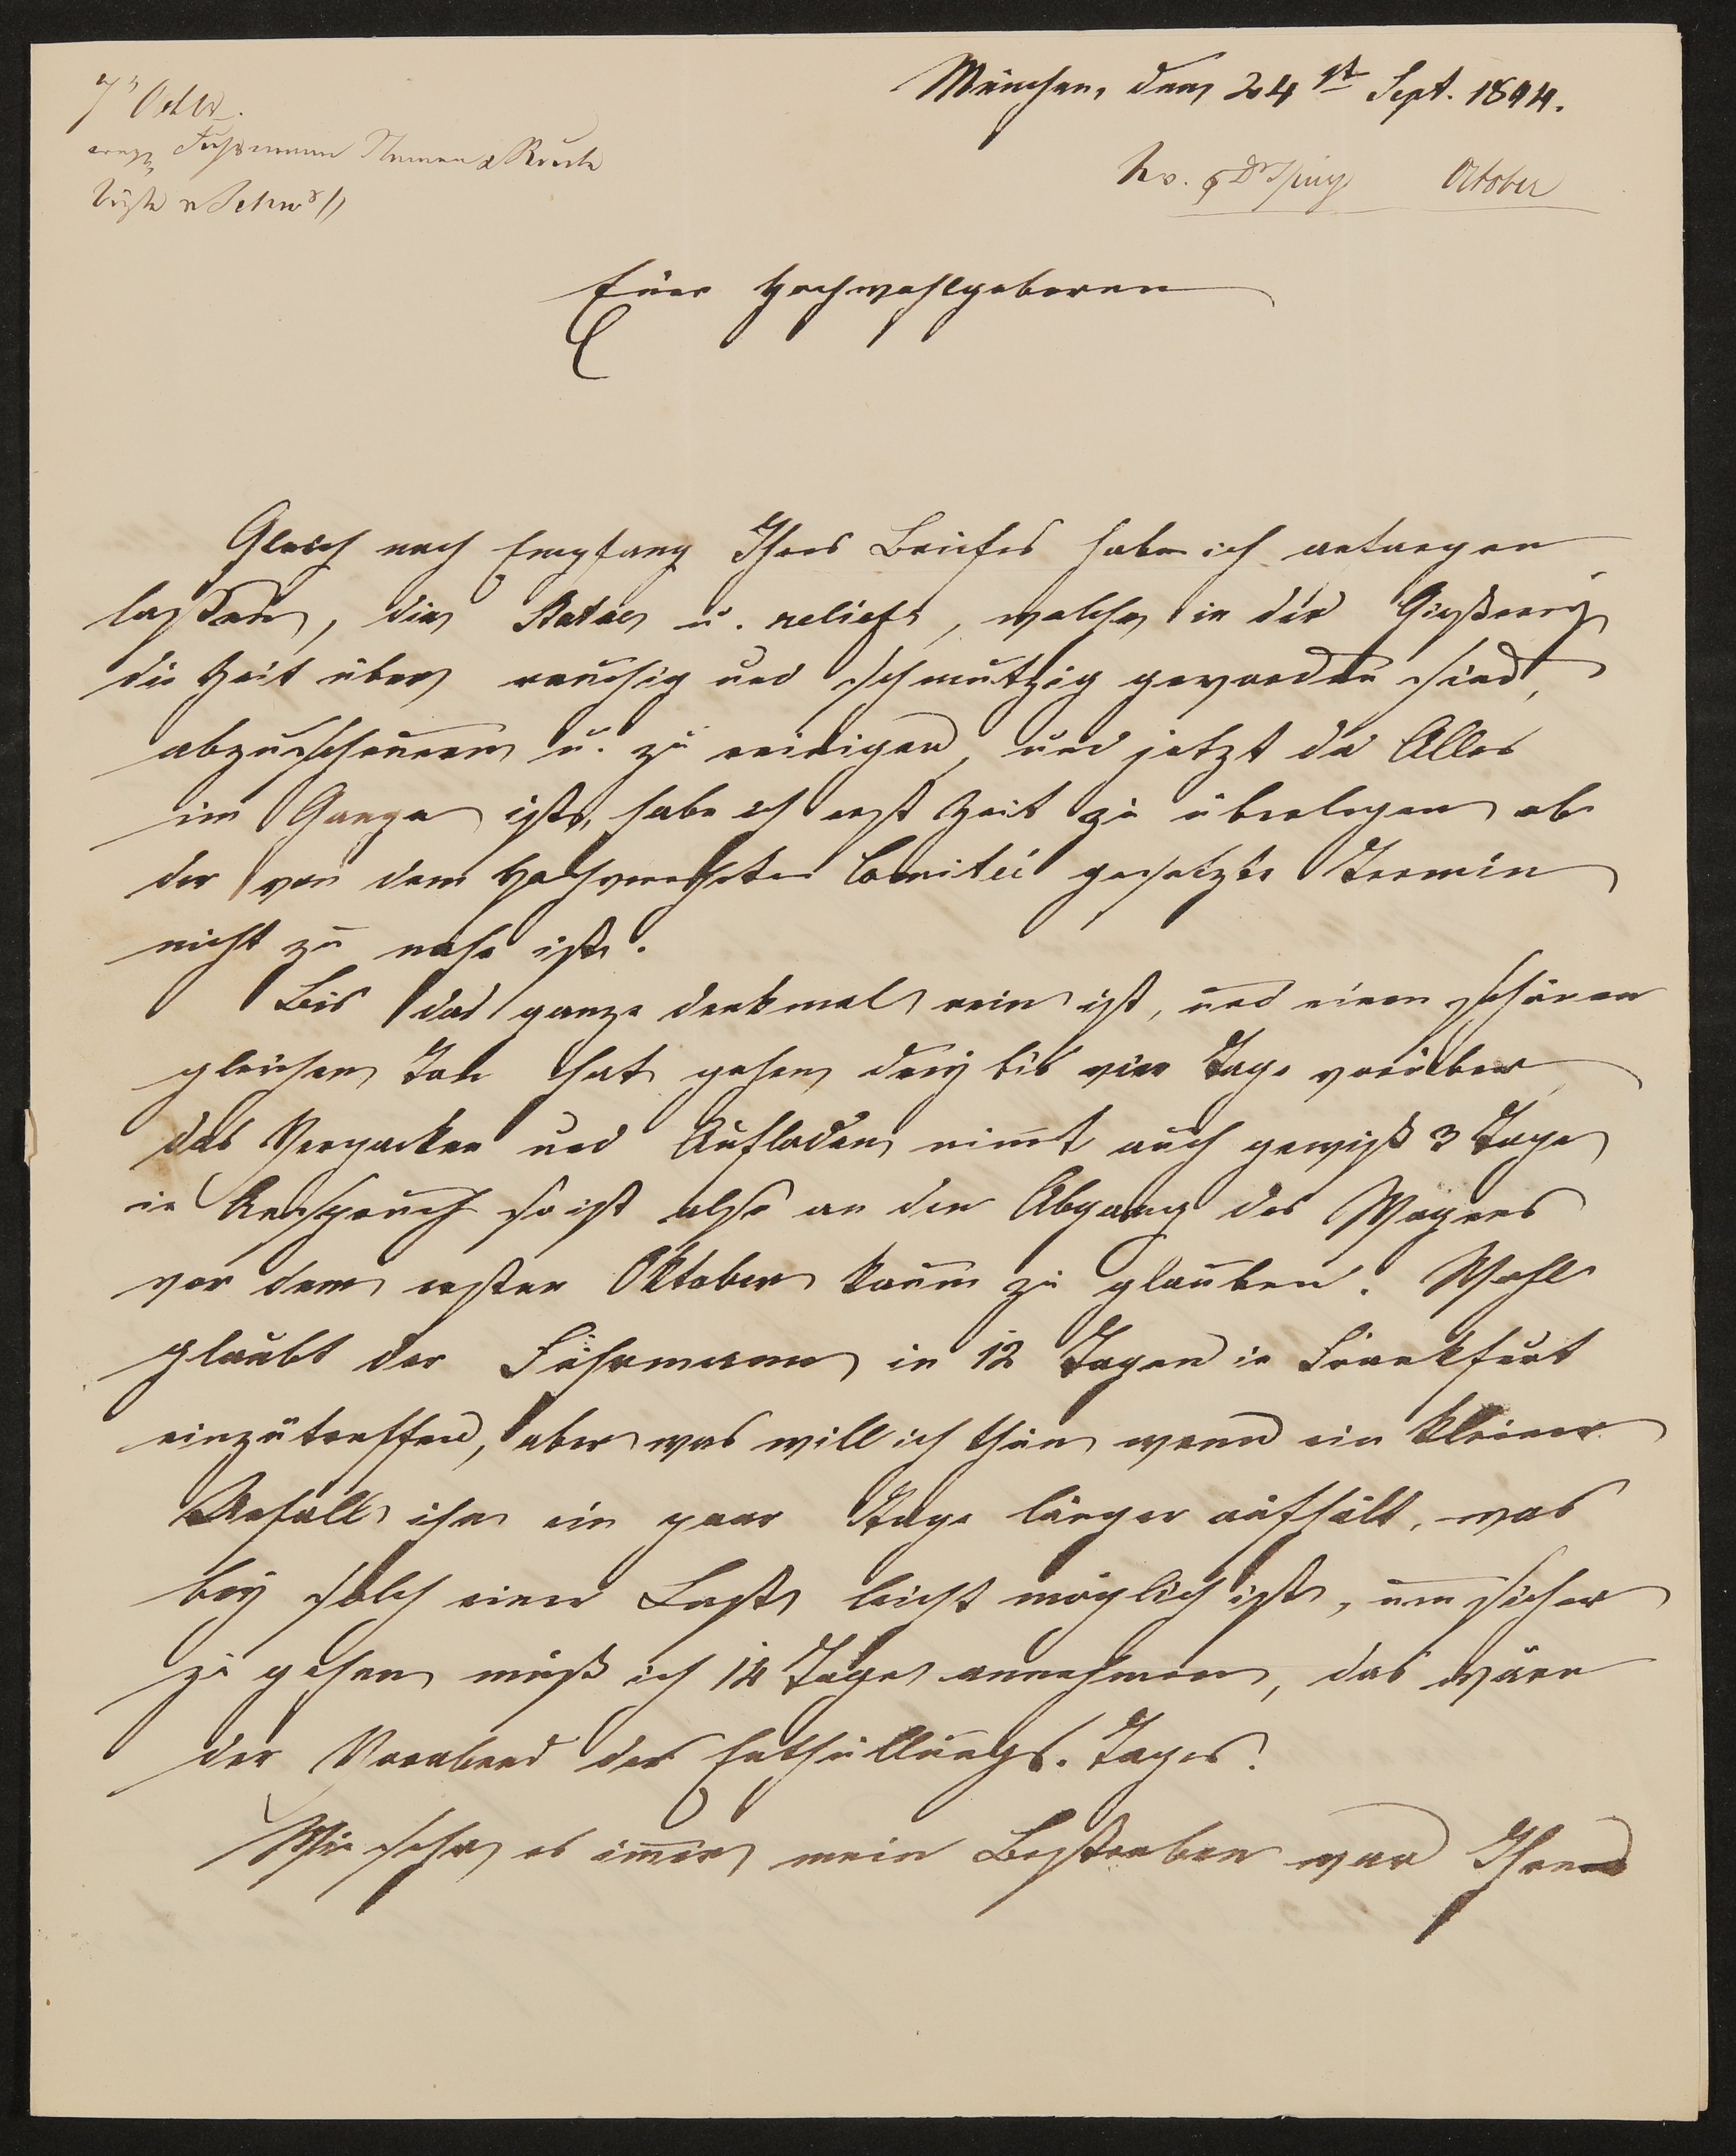 Brief von Ferdinand von Miller an Friedrich John vom 24.09.1844 (Freies Deutsches Hochstift / Frankfurter Goethe-Museum Public Domain Mark)